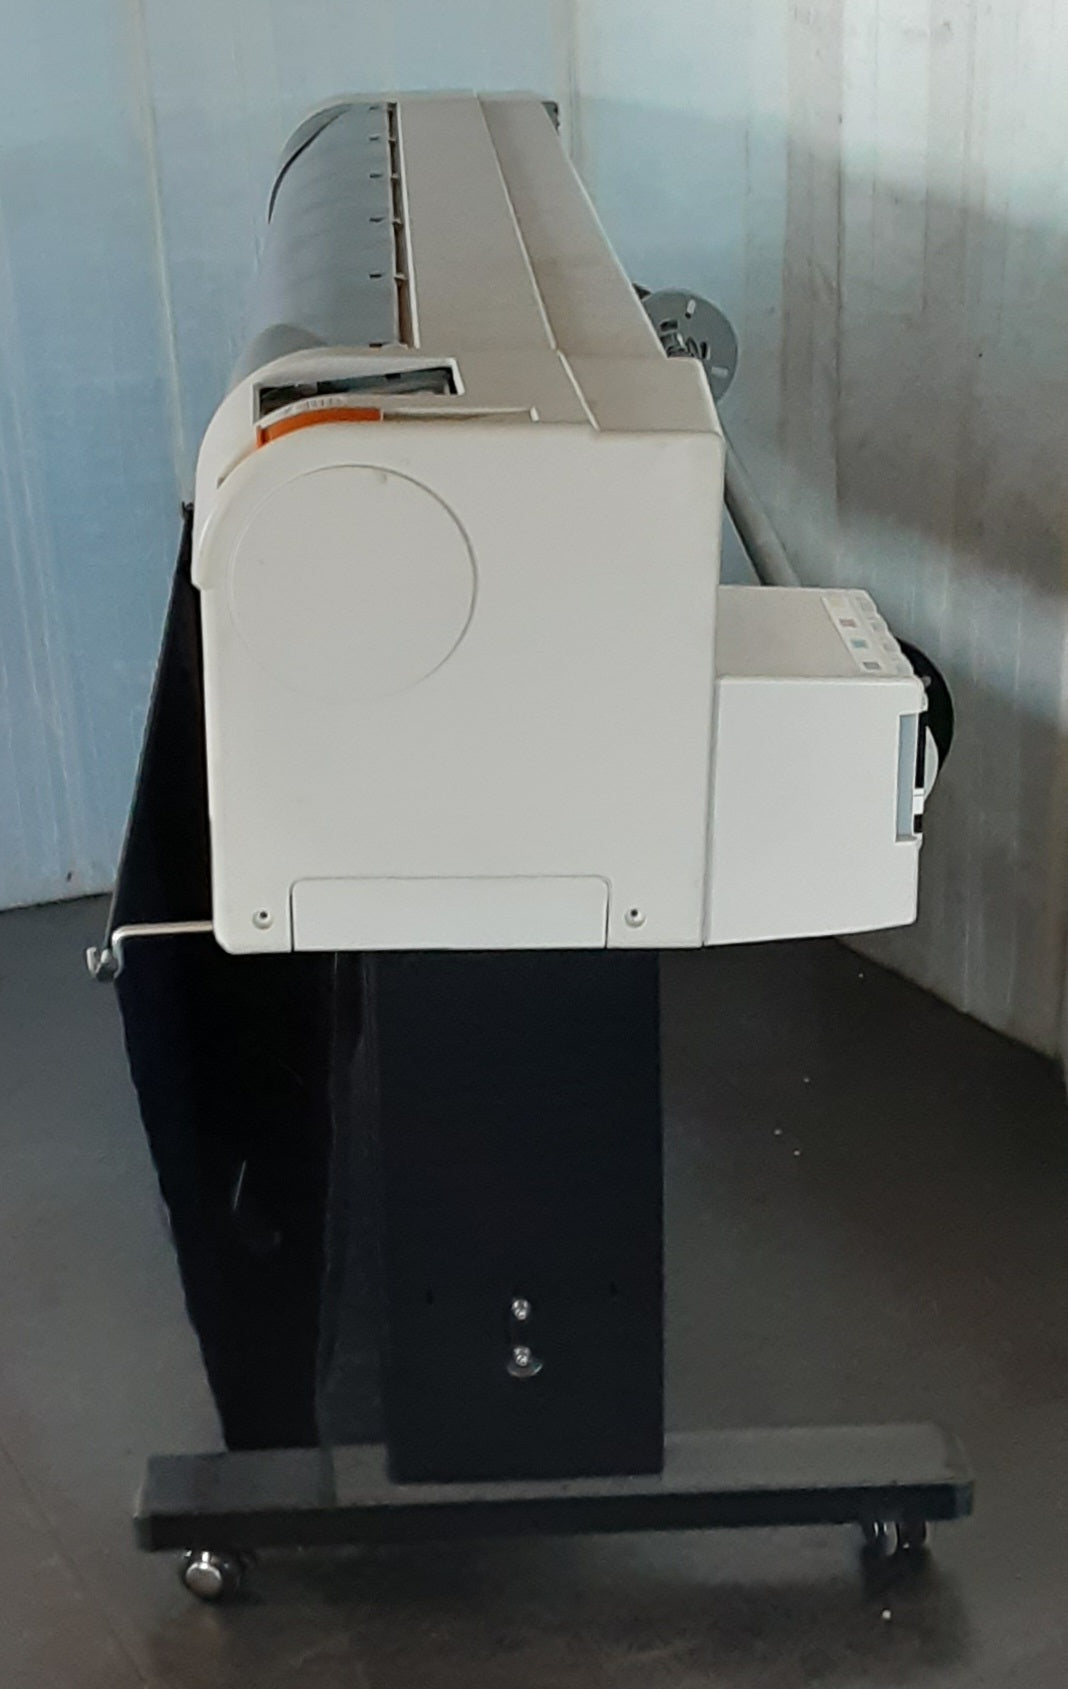 武藤工業 MUTOH RJ-900X CAD用インクジェットプリンタ A1カラー作画最速33秒 mutoh1-cadrj900x-0160